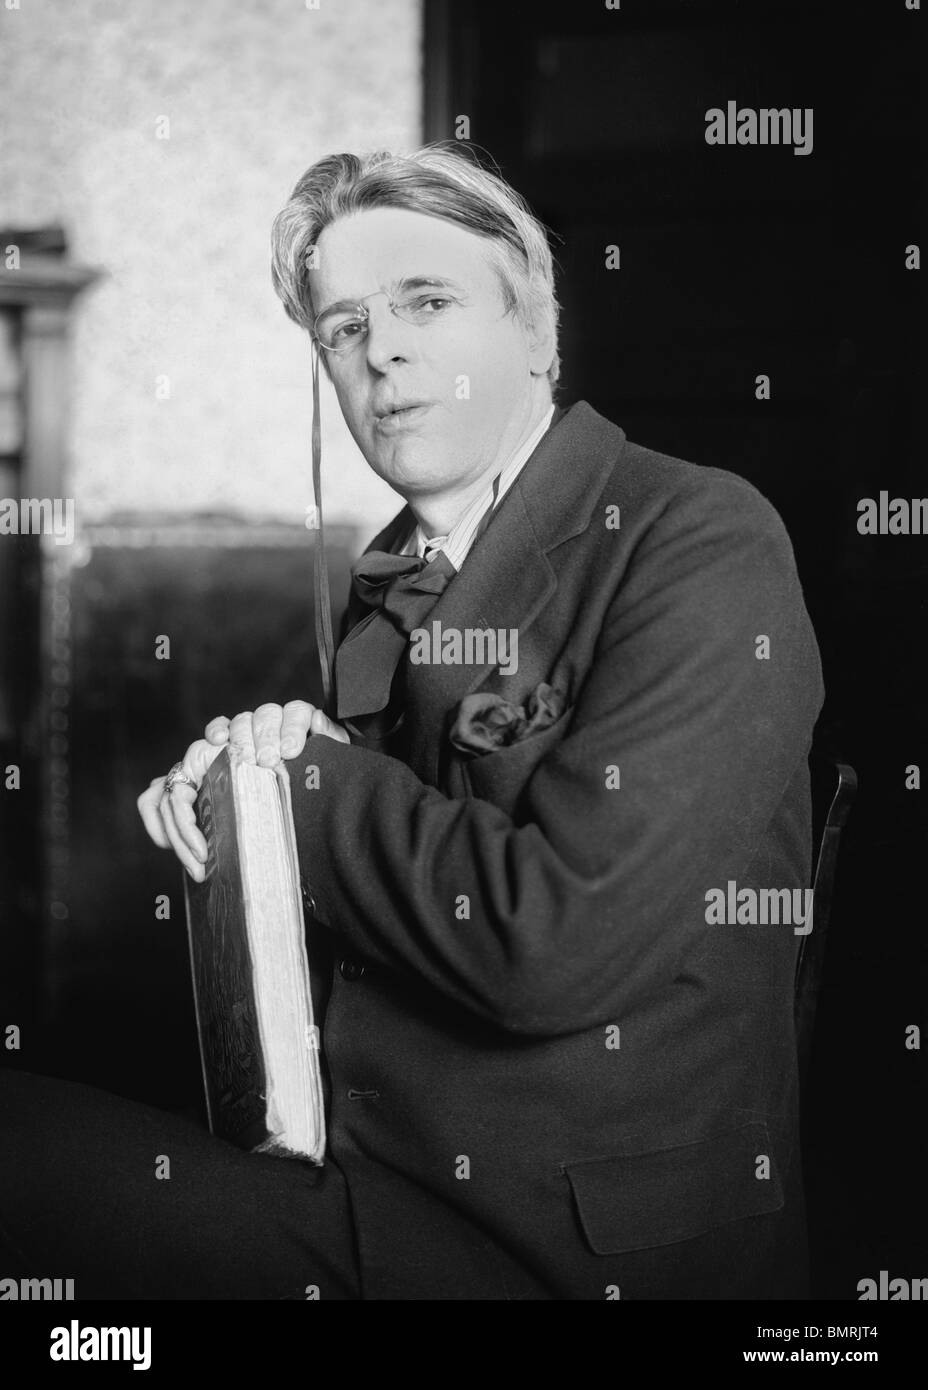 Porträt-Foto-c1920s des irischen Dichters William Butler Yeats (1865-1939) - Sieger von Nobelpreis für Literatur im Jahr 1923. Stockfoto